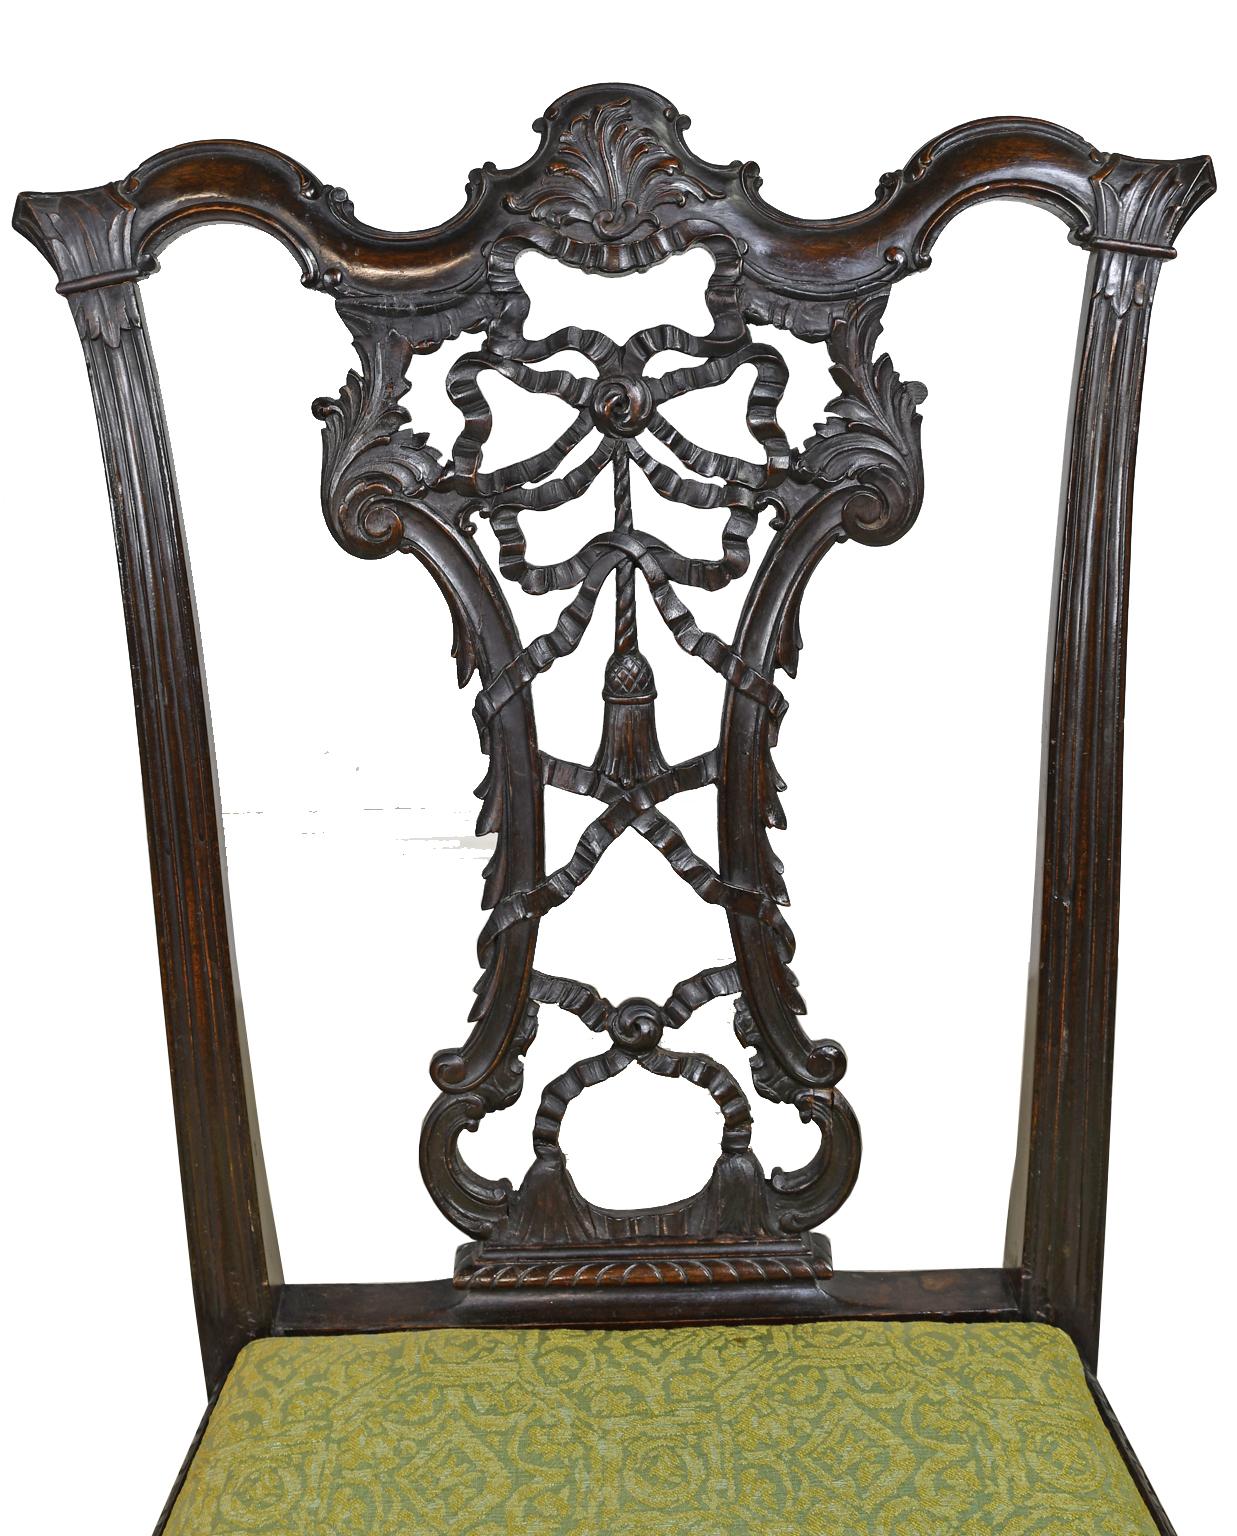 Ein sehr schöner Rokoko-Revival-Stuhl im Chippendale-Stil aus Mahagoni mit geschnitzter Bandrückenlehne. Exquisit geschnitzt und artikuliert Band zurück durch Akanthus geschnitzt Blätter umrahmt. Die Knie des Stuhles und die hochgezogenen Klauenfüße